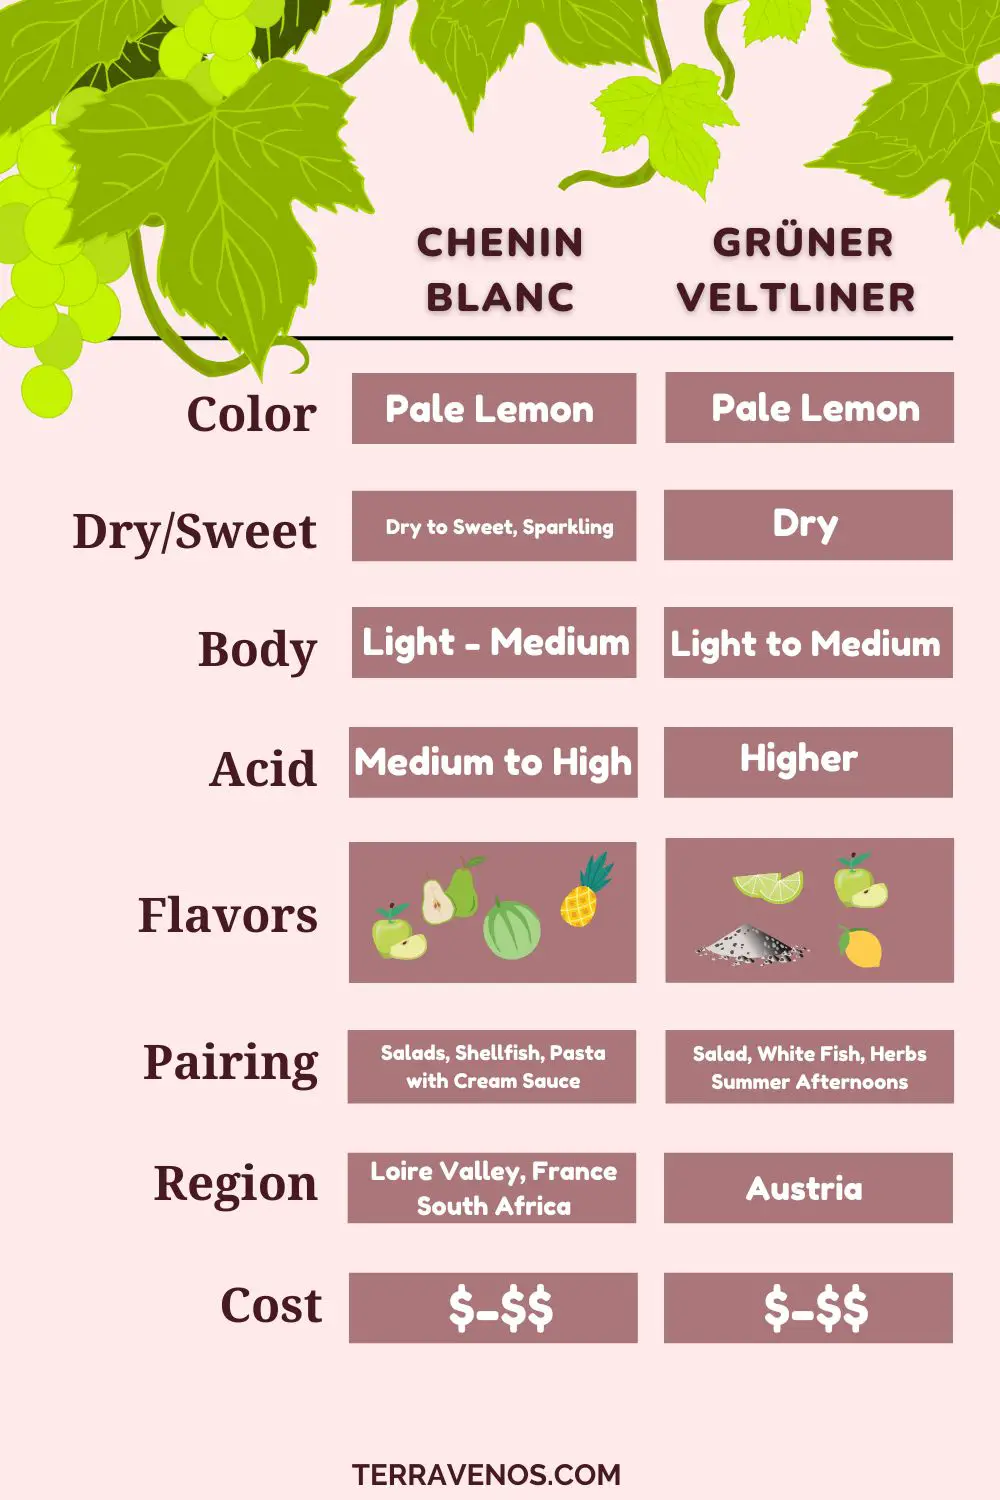 gruner veltliner vs chenin blanc wine infographic